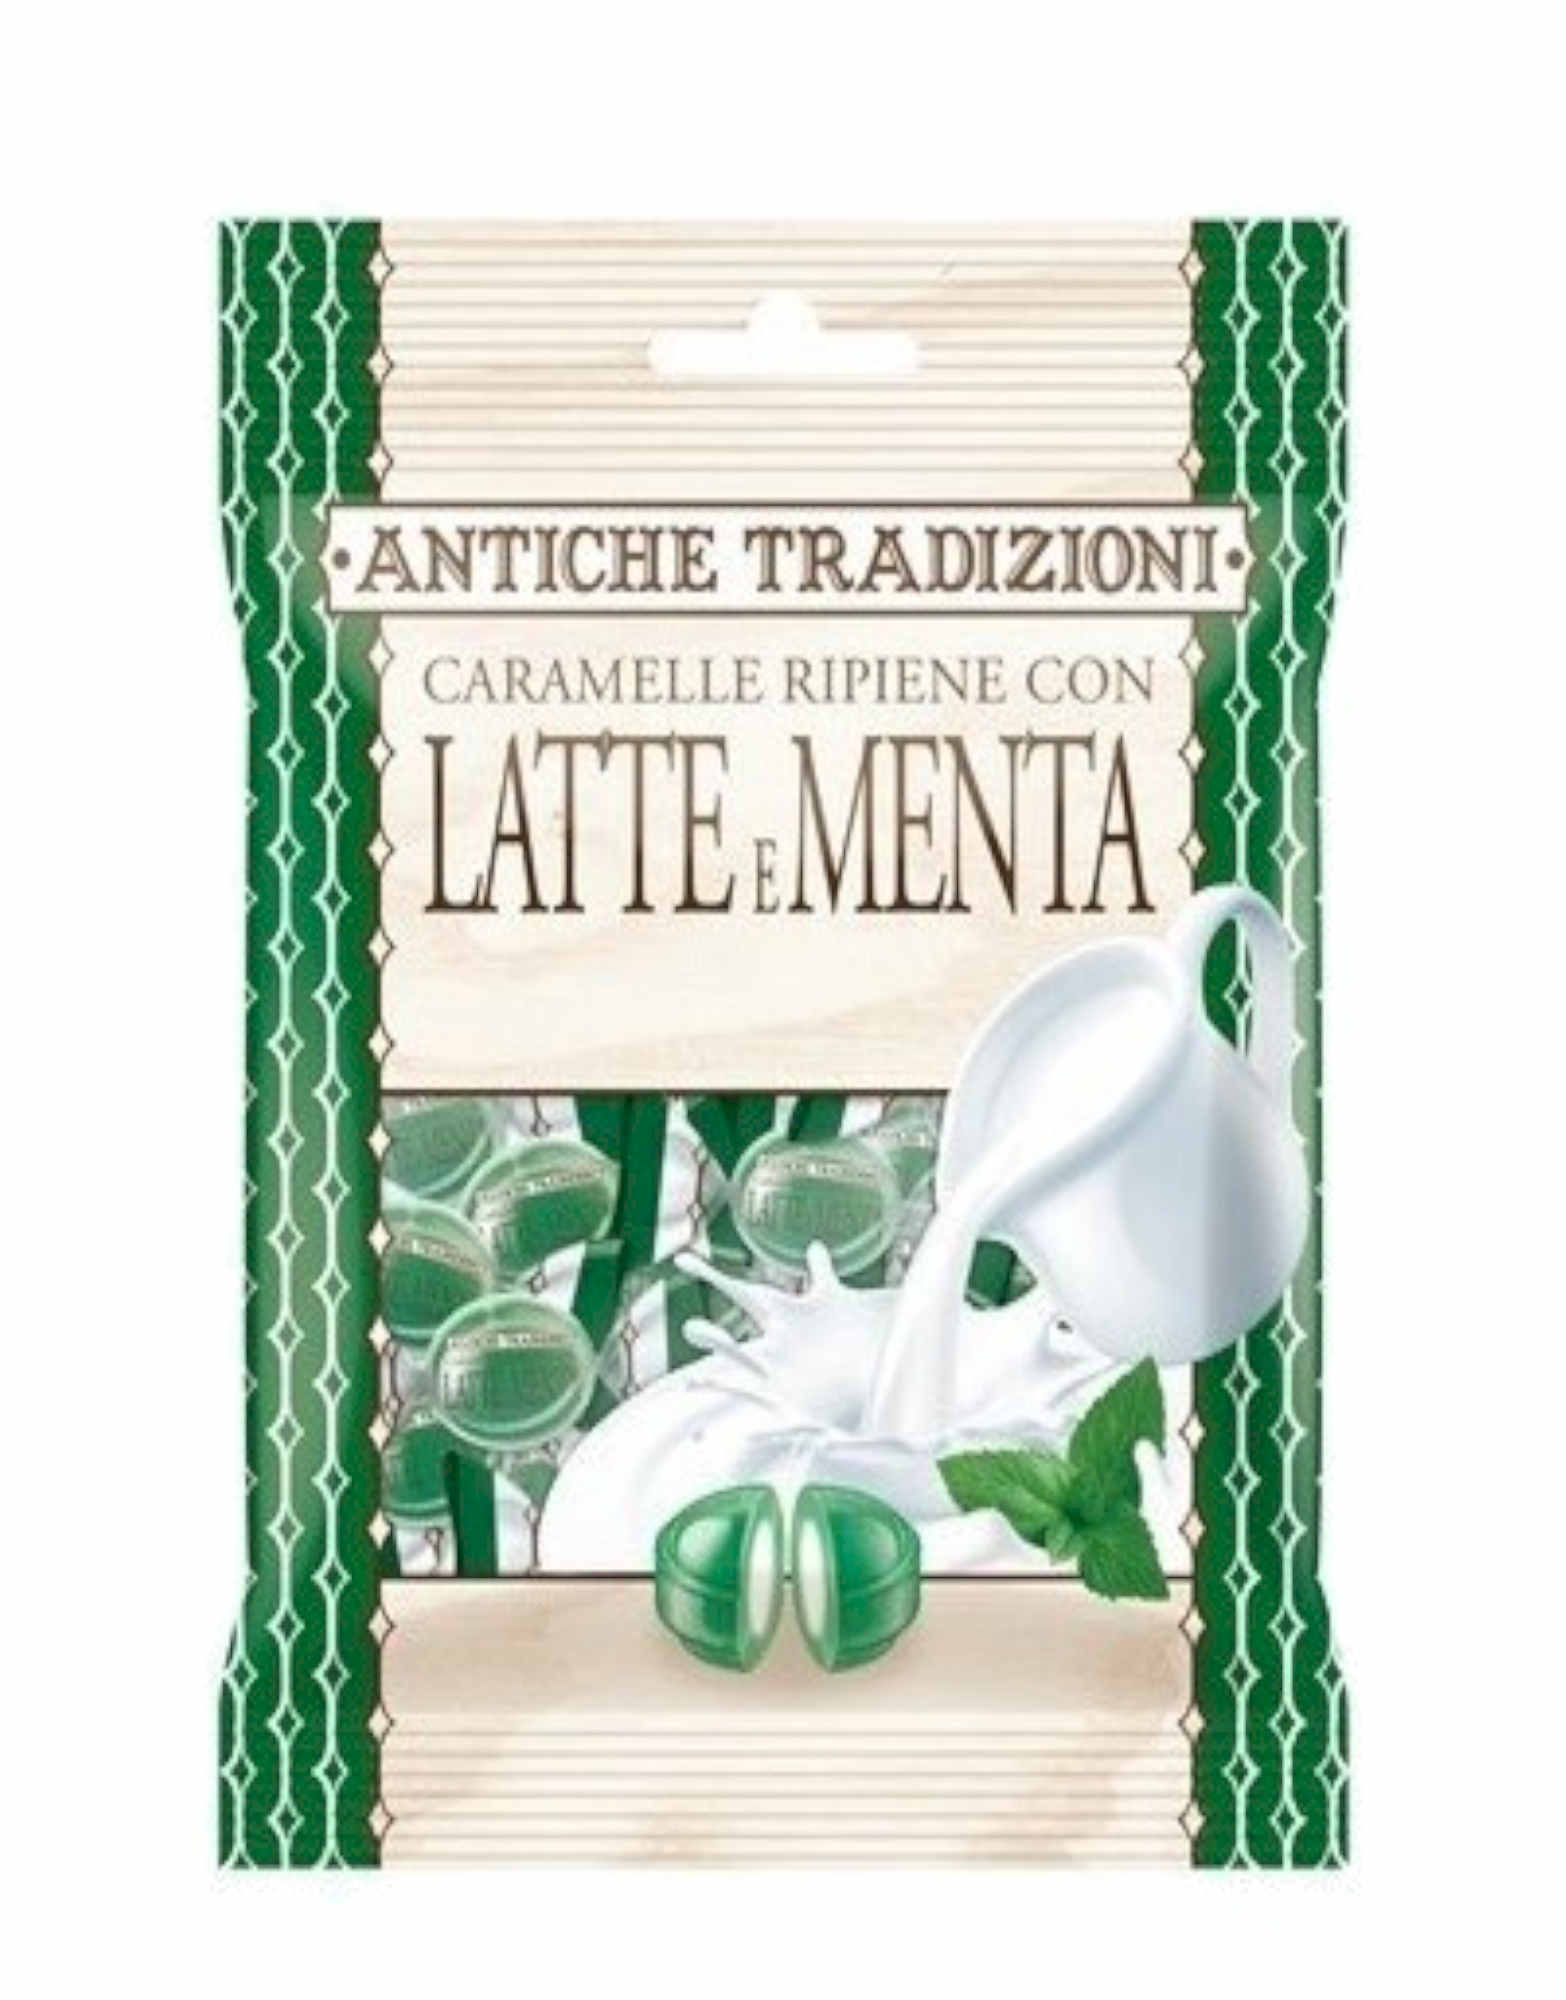 Caramelle Ripiene con Latte e Menta by Antiche tradizioni, 60 grams 